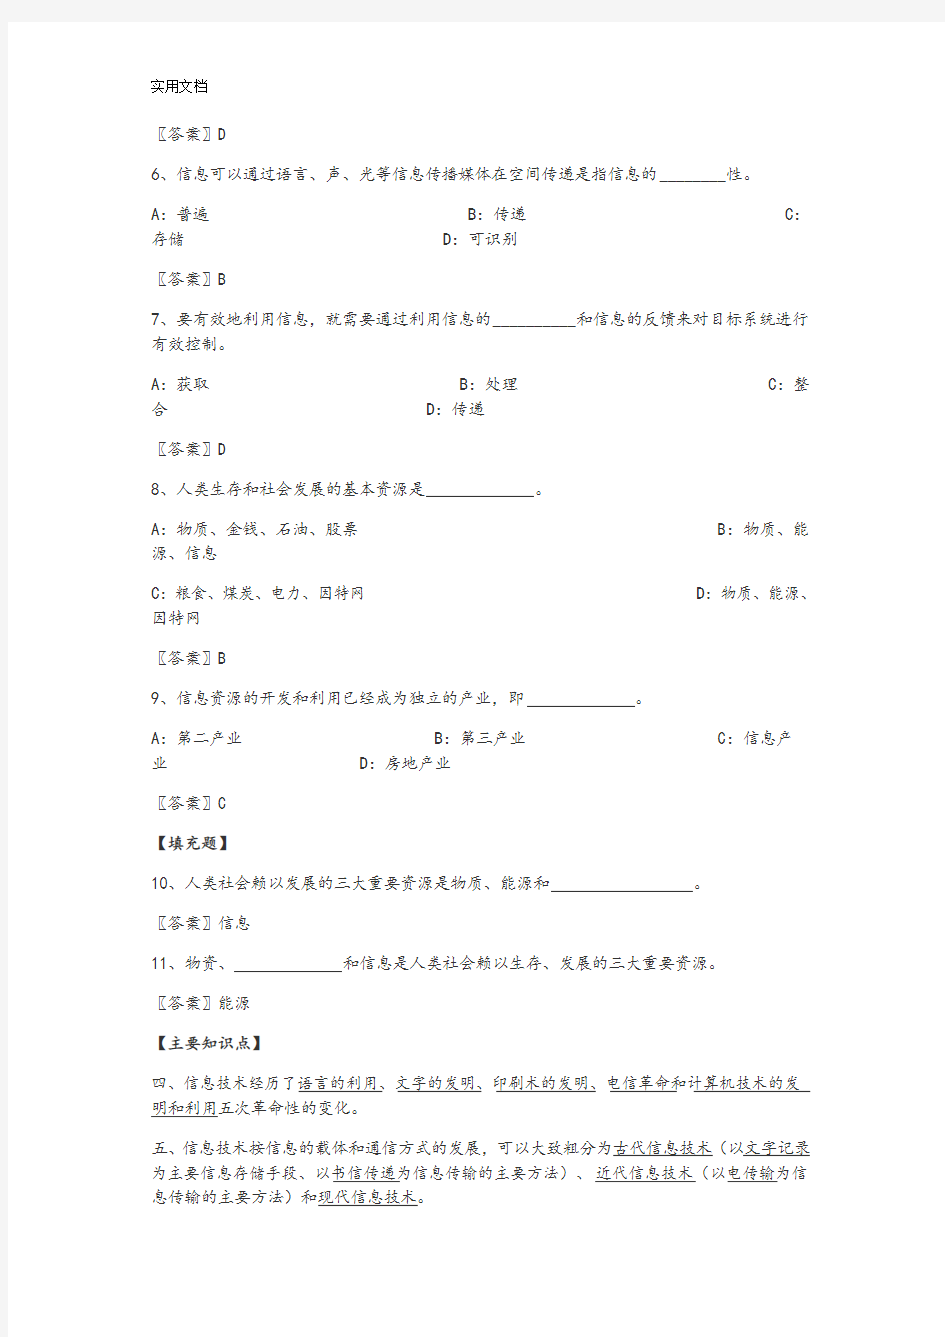 【上海市高等学校计算机等级考试(一级)理论题部分·复习参考